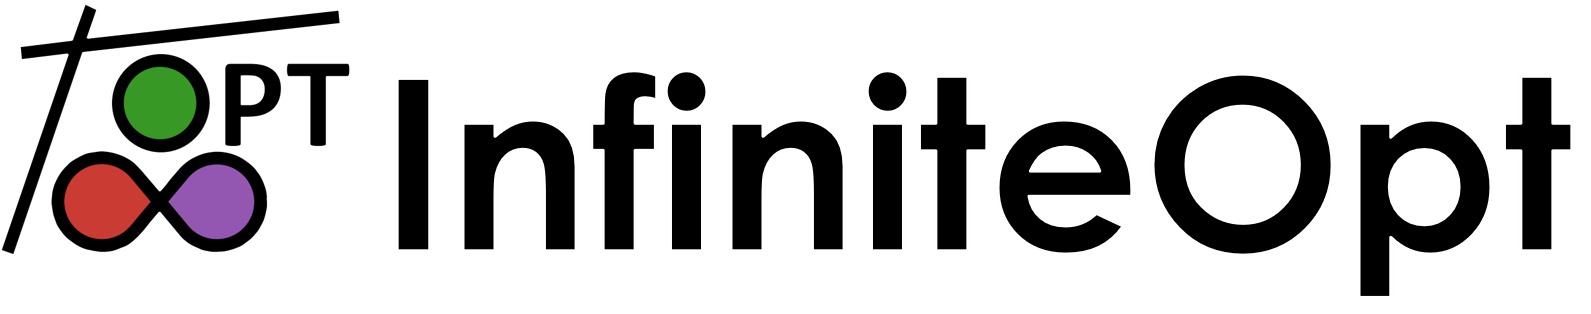 full_logo.png